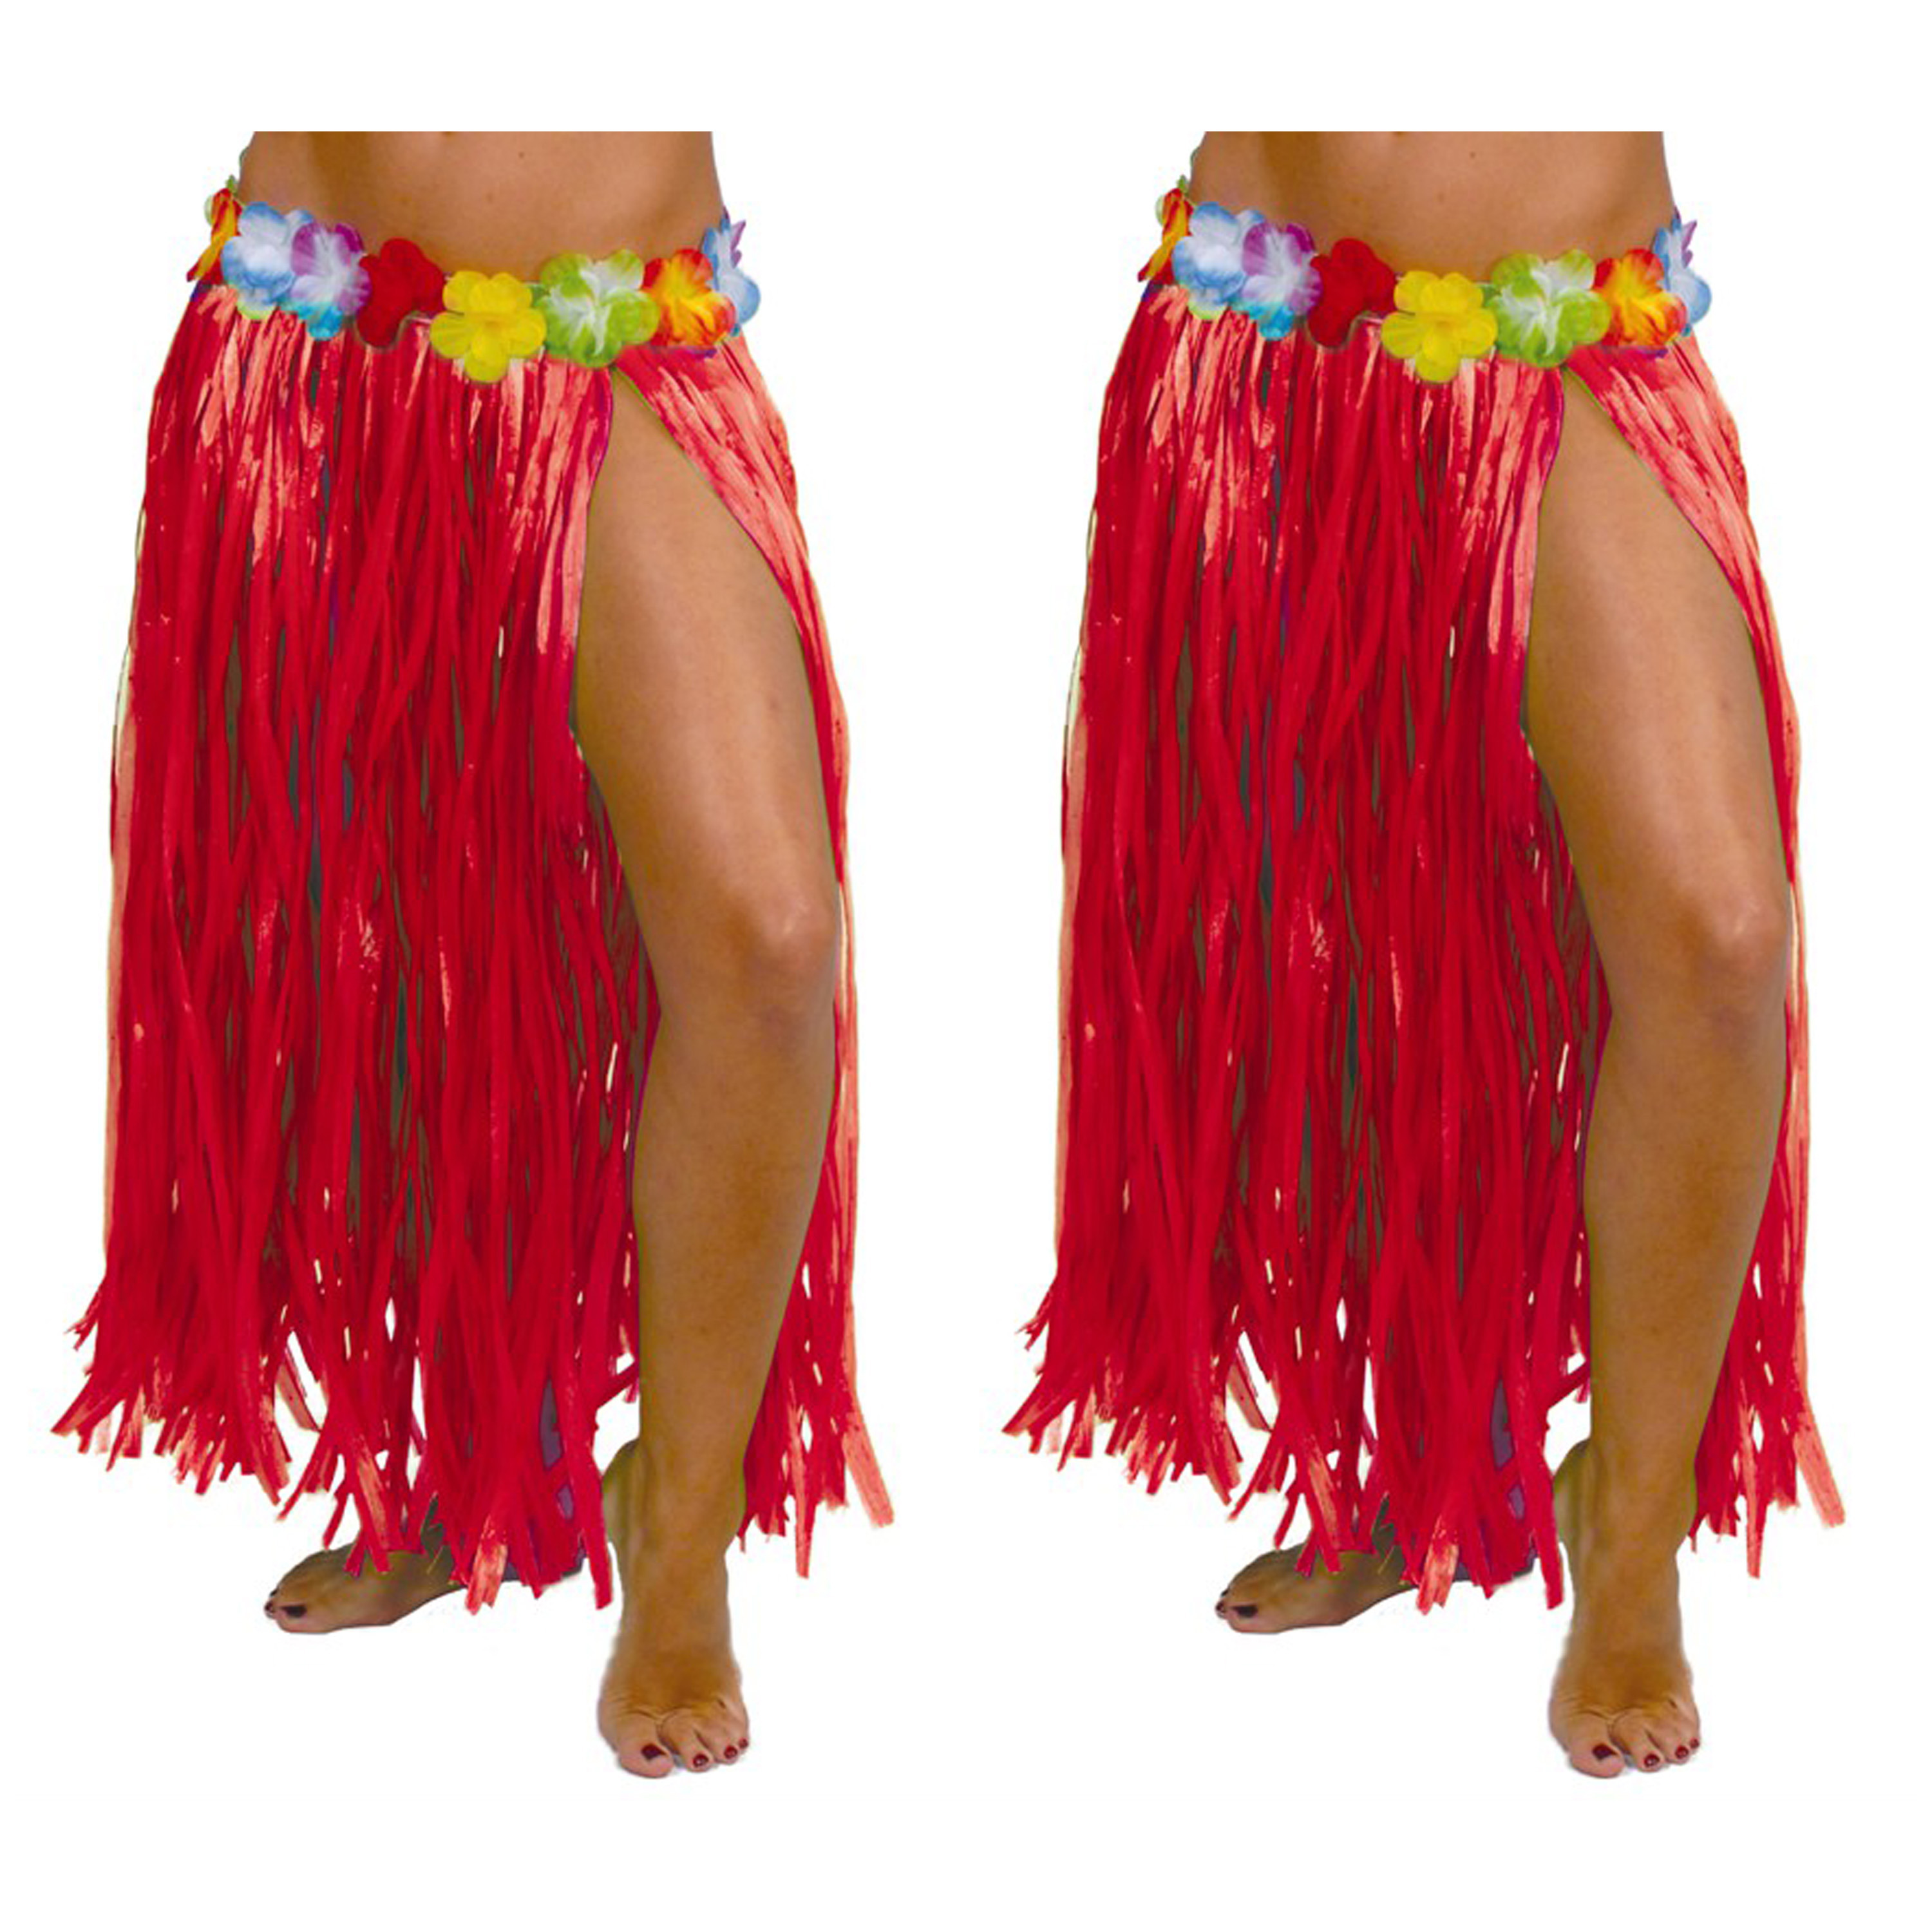 Hawaii verkleed rokje 2x voor volwassenen rood 75 cm rieten hoela rokje tropisch